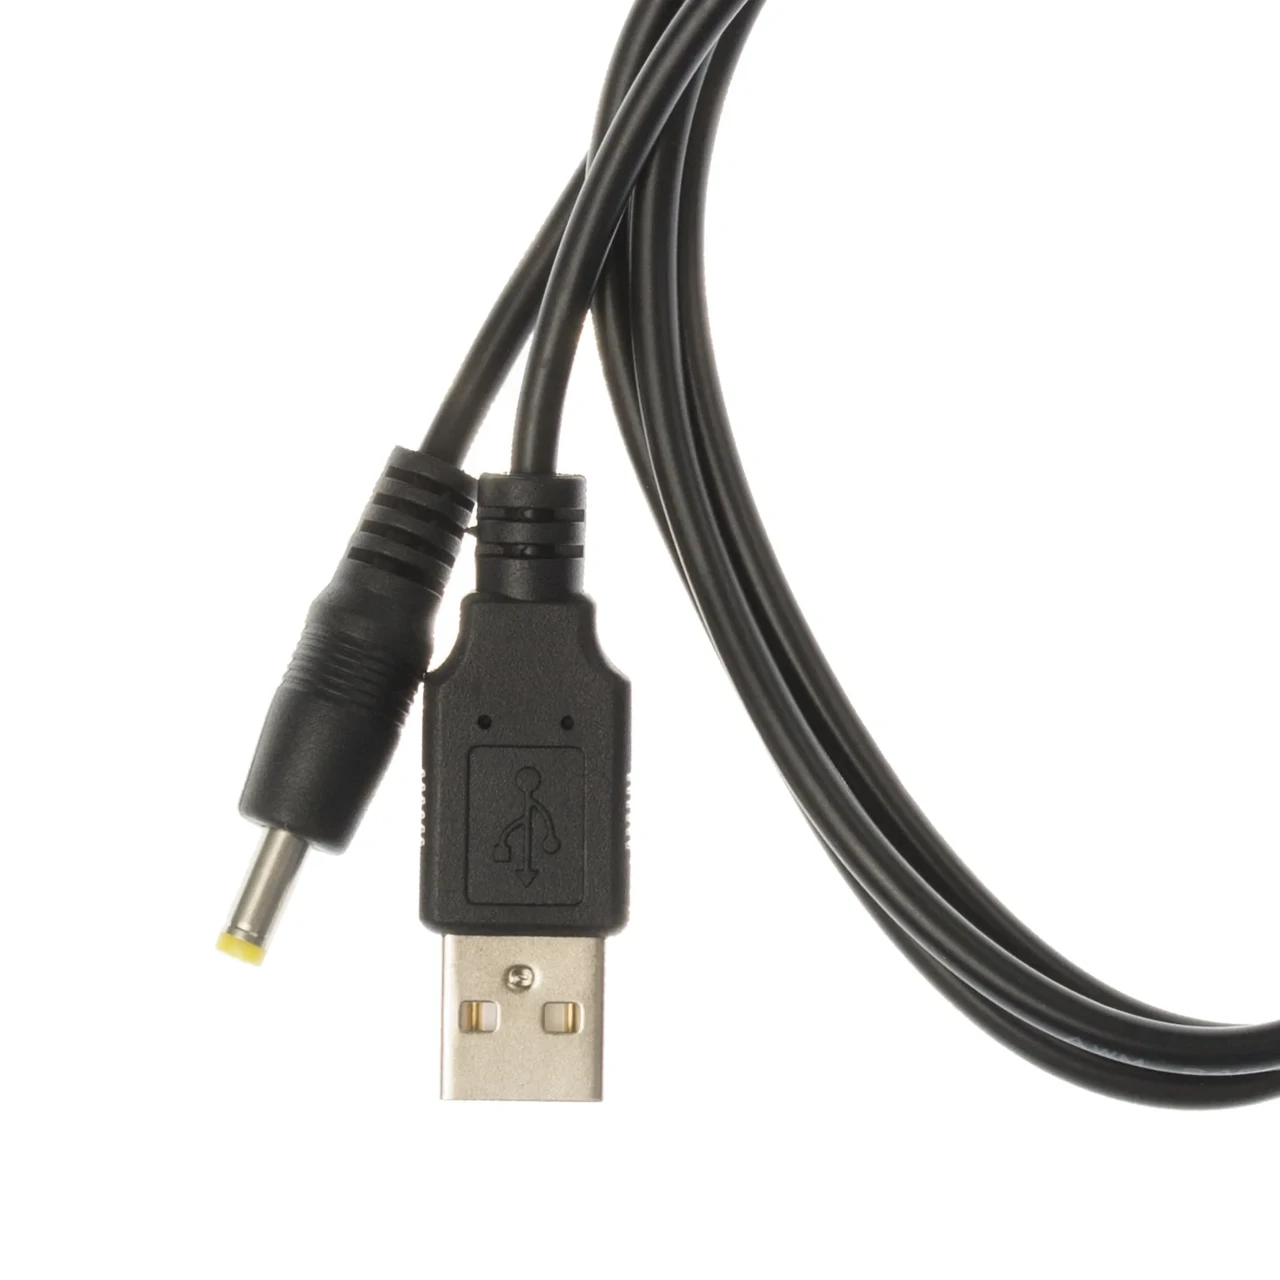 USB кабель для Lonense DOMI (доми)